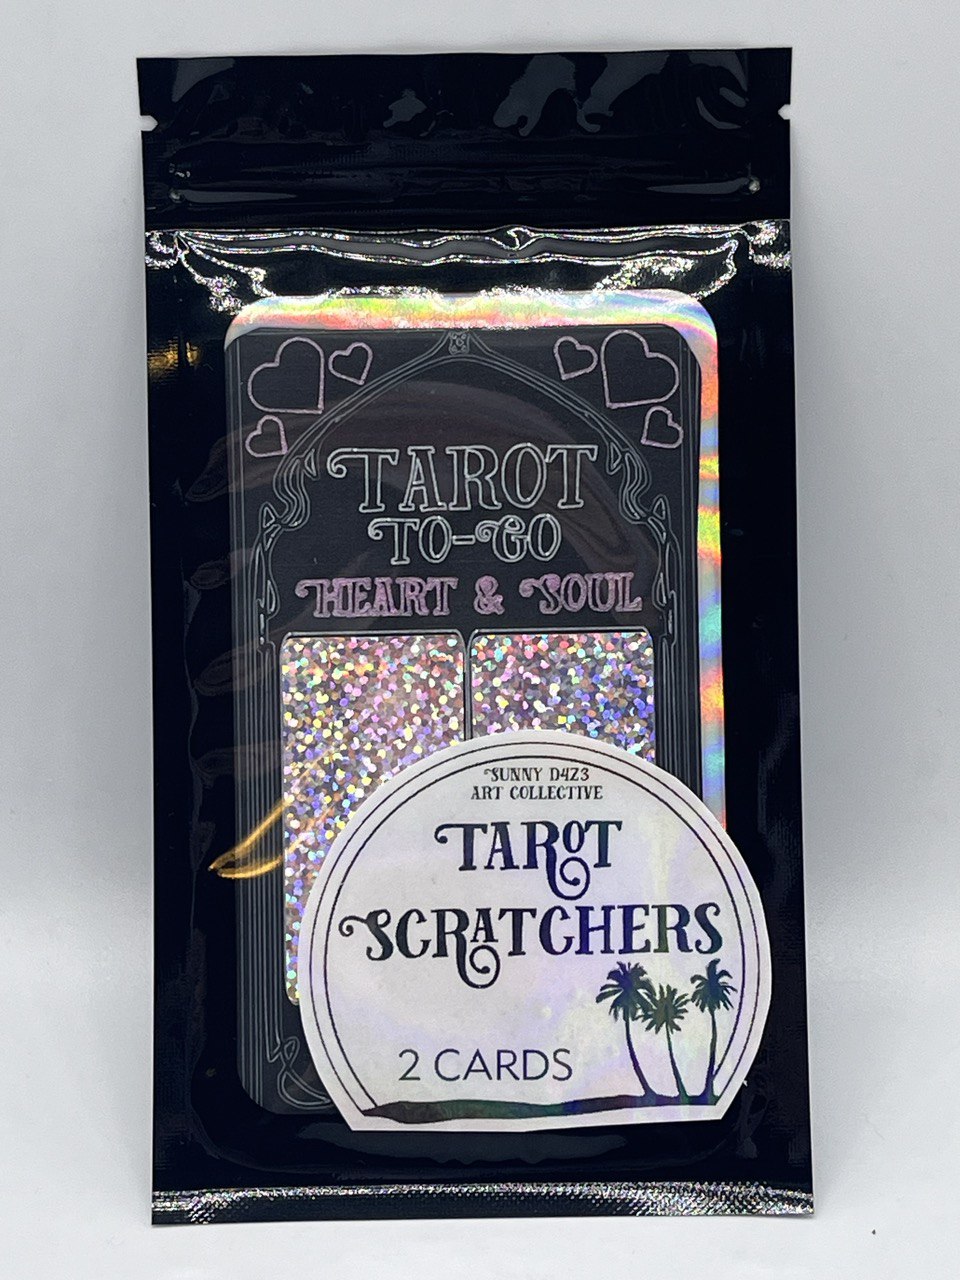 scratchers- tarot to go 2 card pack- heart & soul